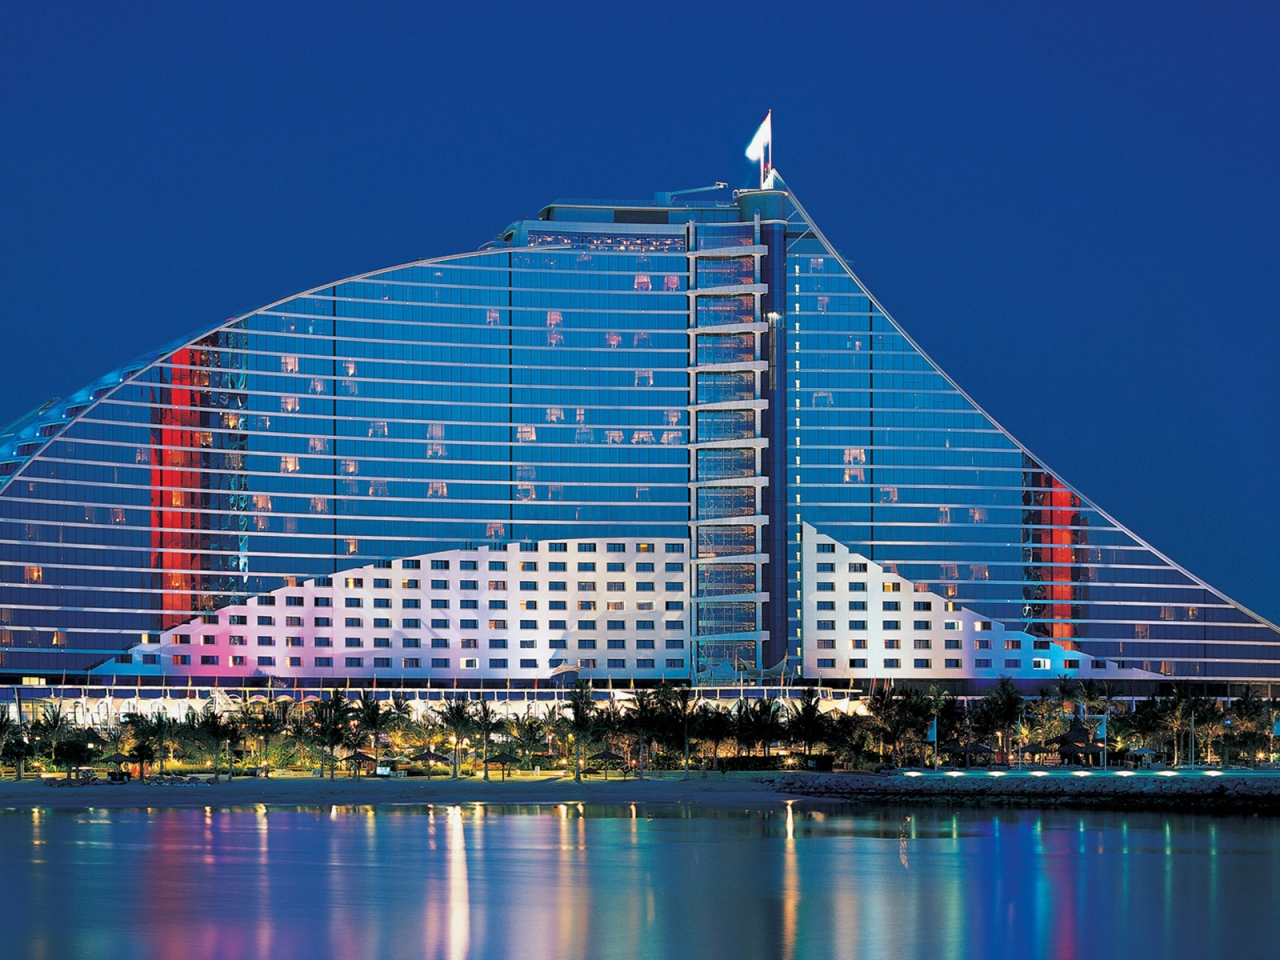 Jumeirah Beach Hotel Dubai for 1280 x 960 resolution